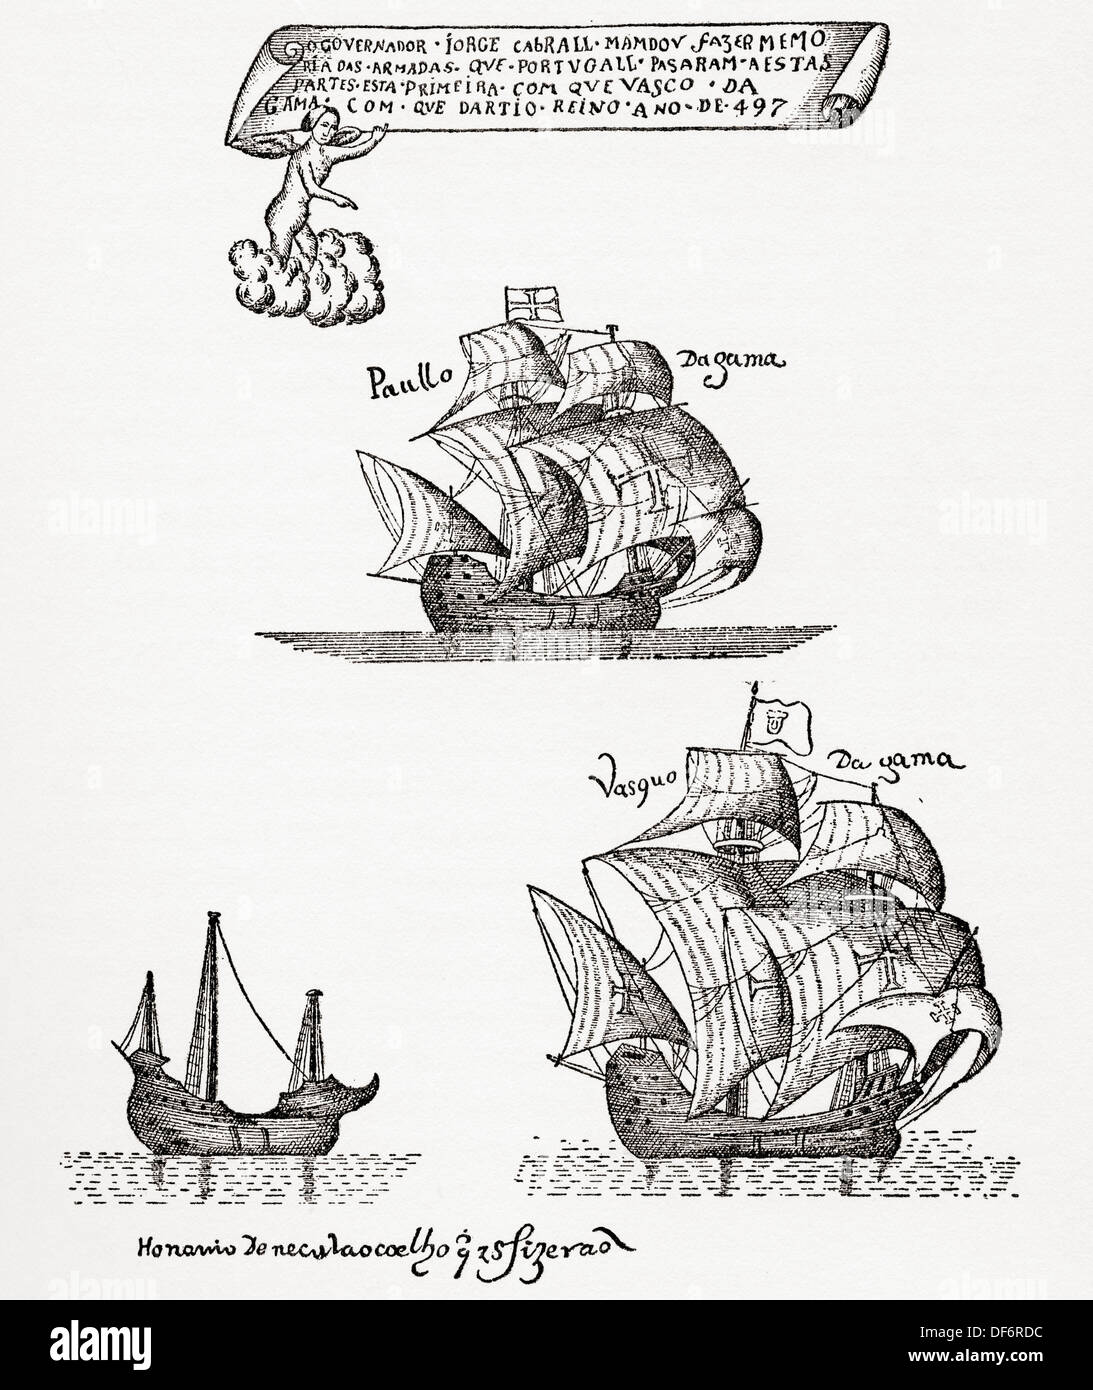 La flotte de Vasco Da Gama de navires qui a quitté Lisbonne, Portugal en 1497 sur la première expédition à la voile autour du Cap de Bonne Espérance Banque D'Images